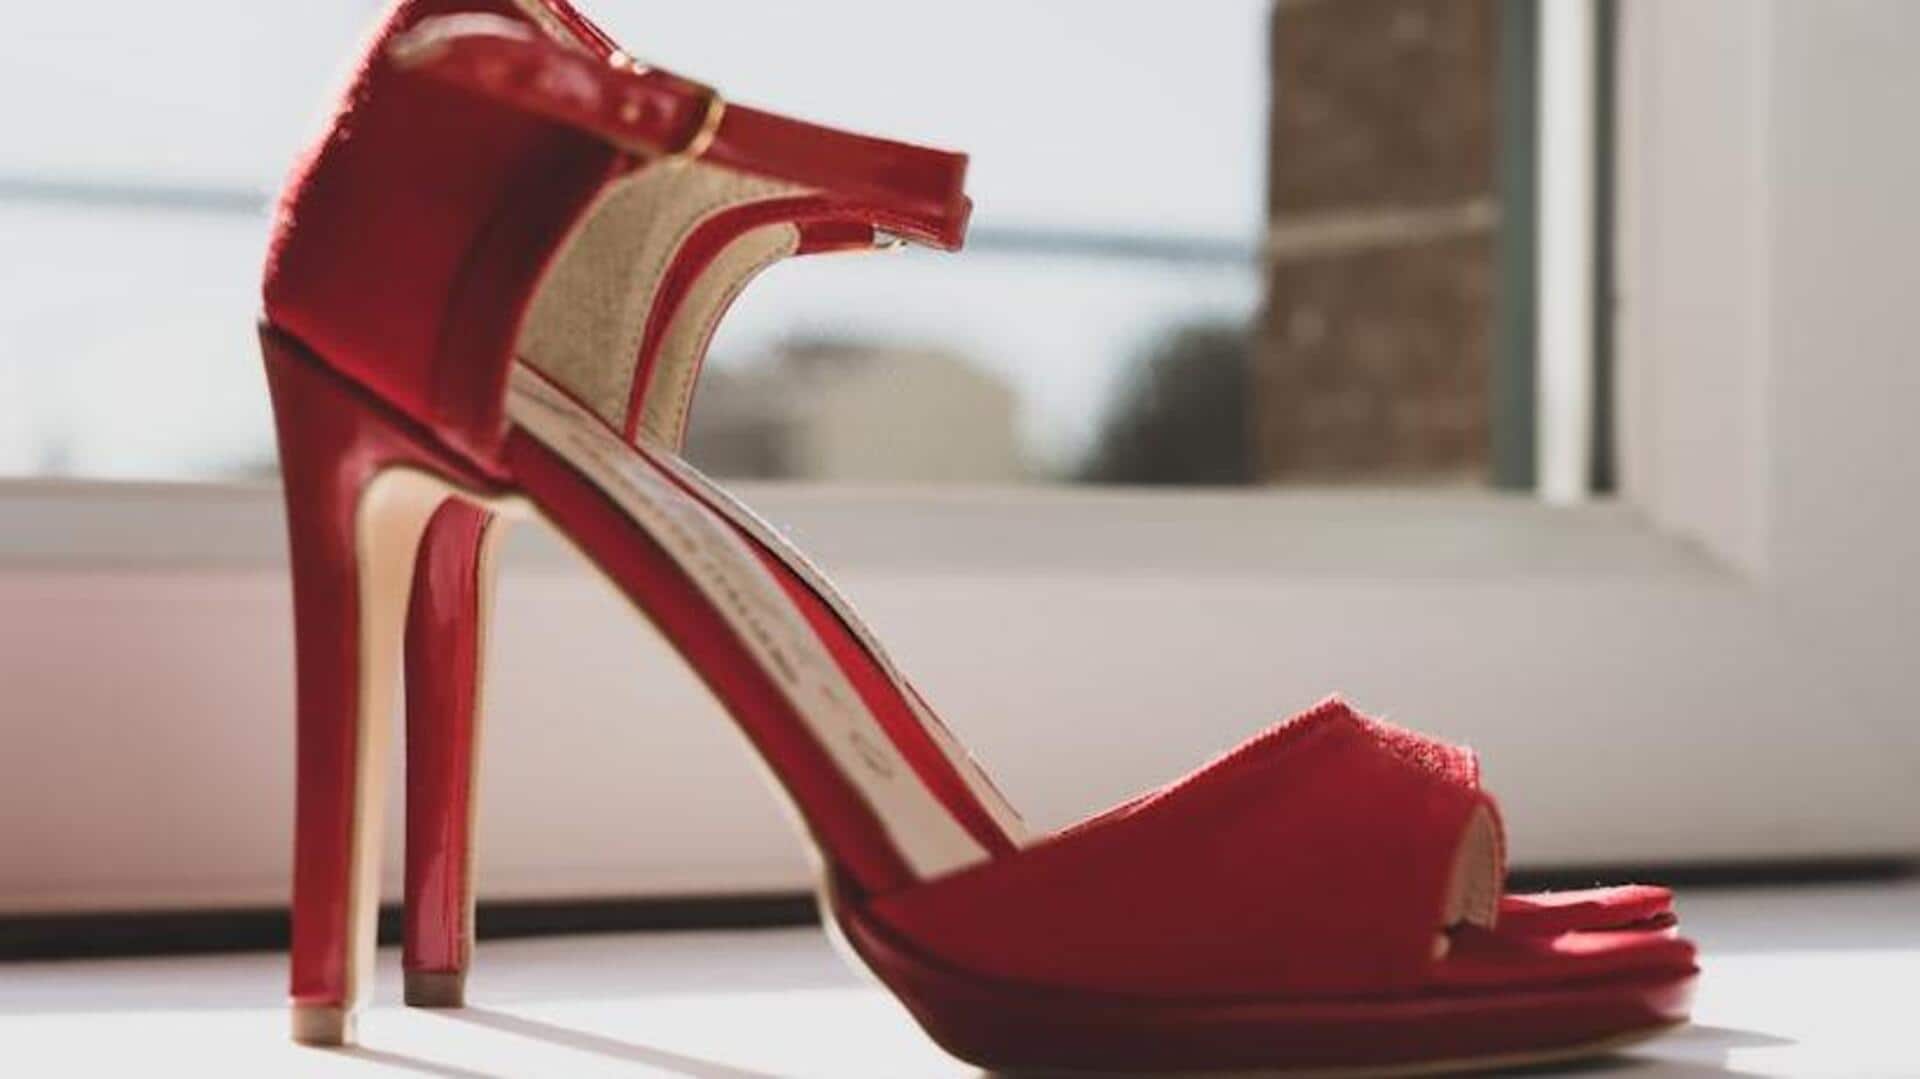 How to elevate comfort in high heels